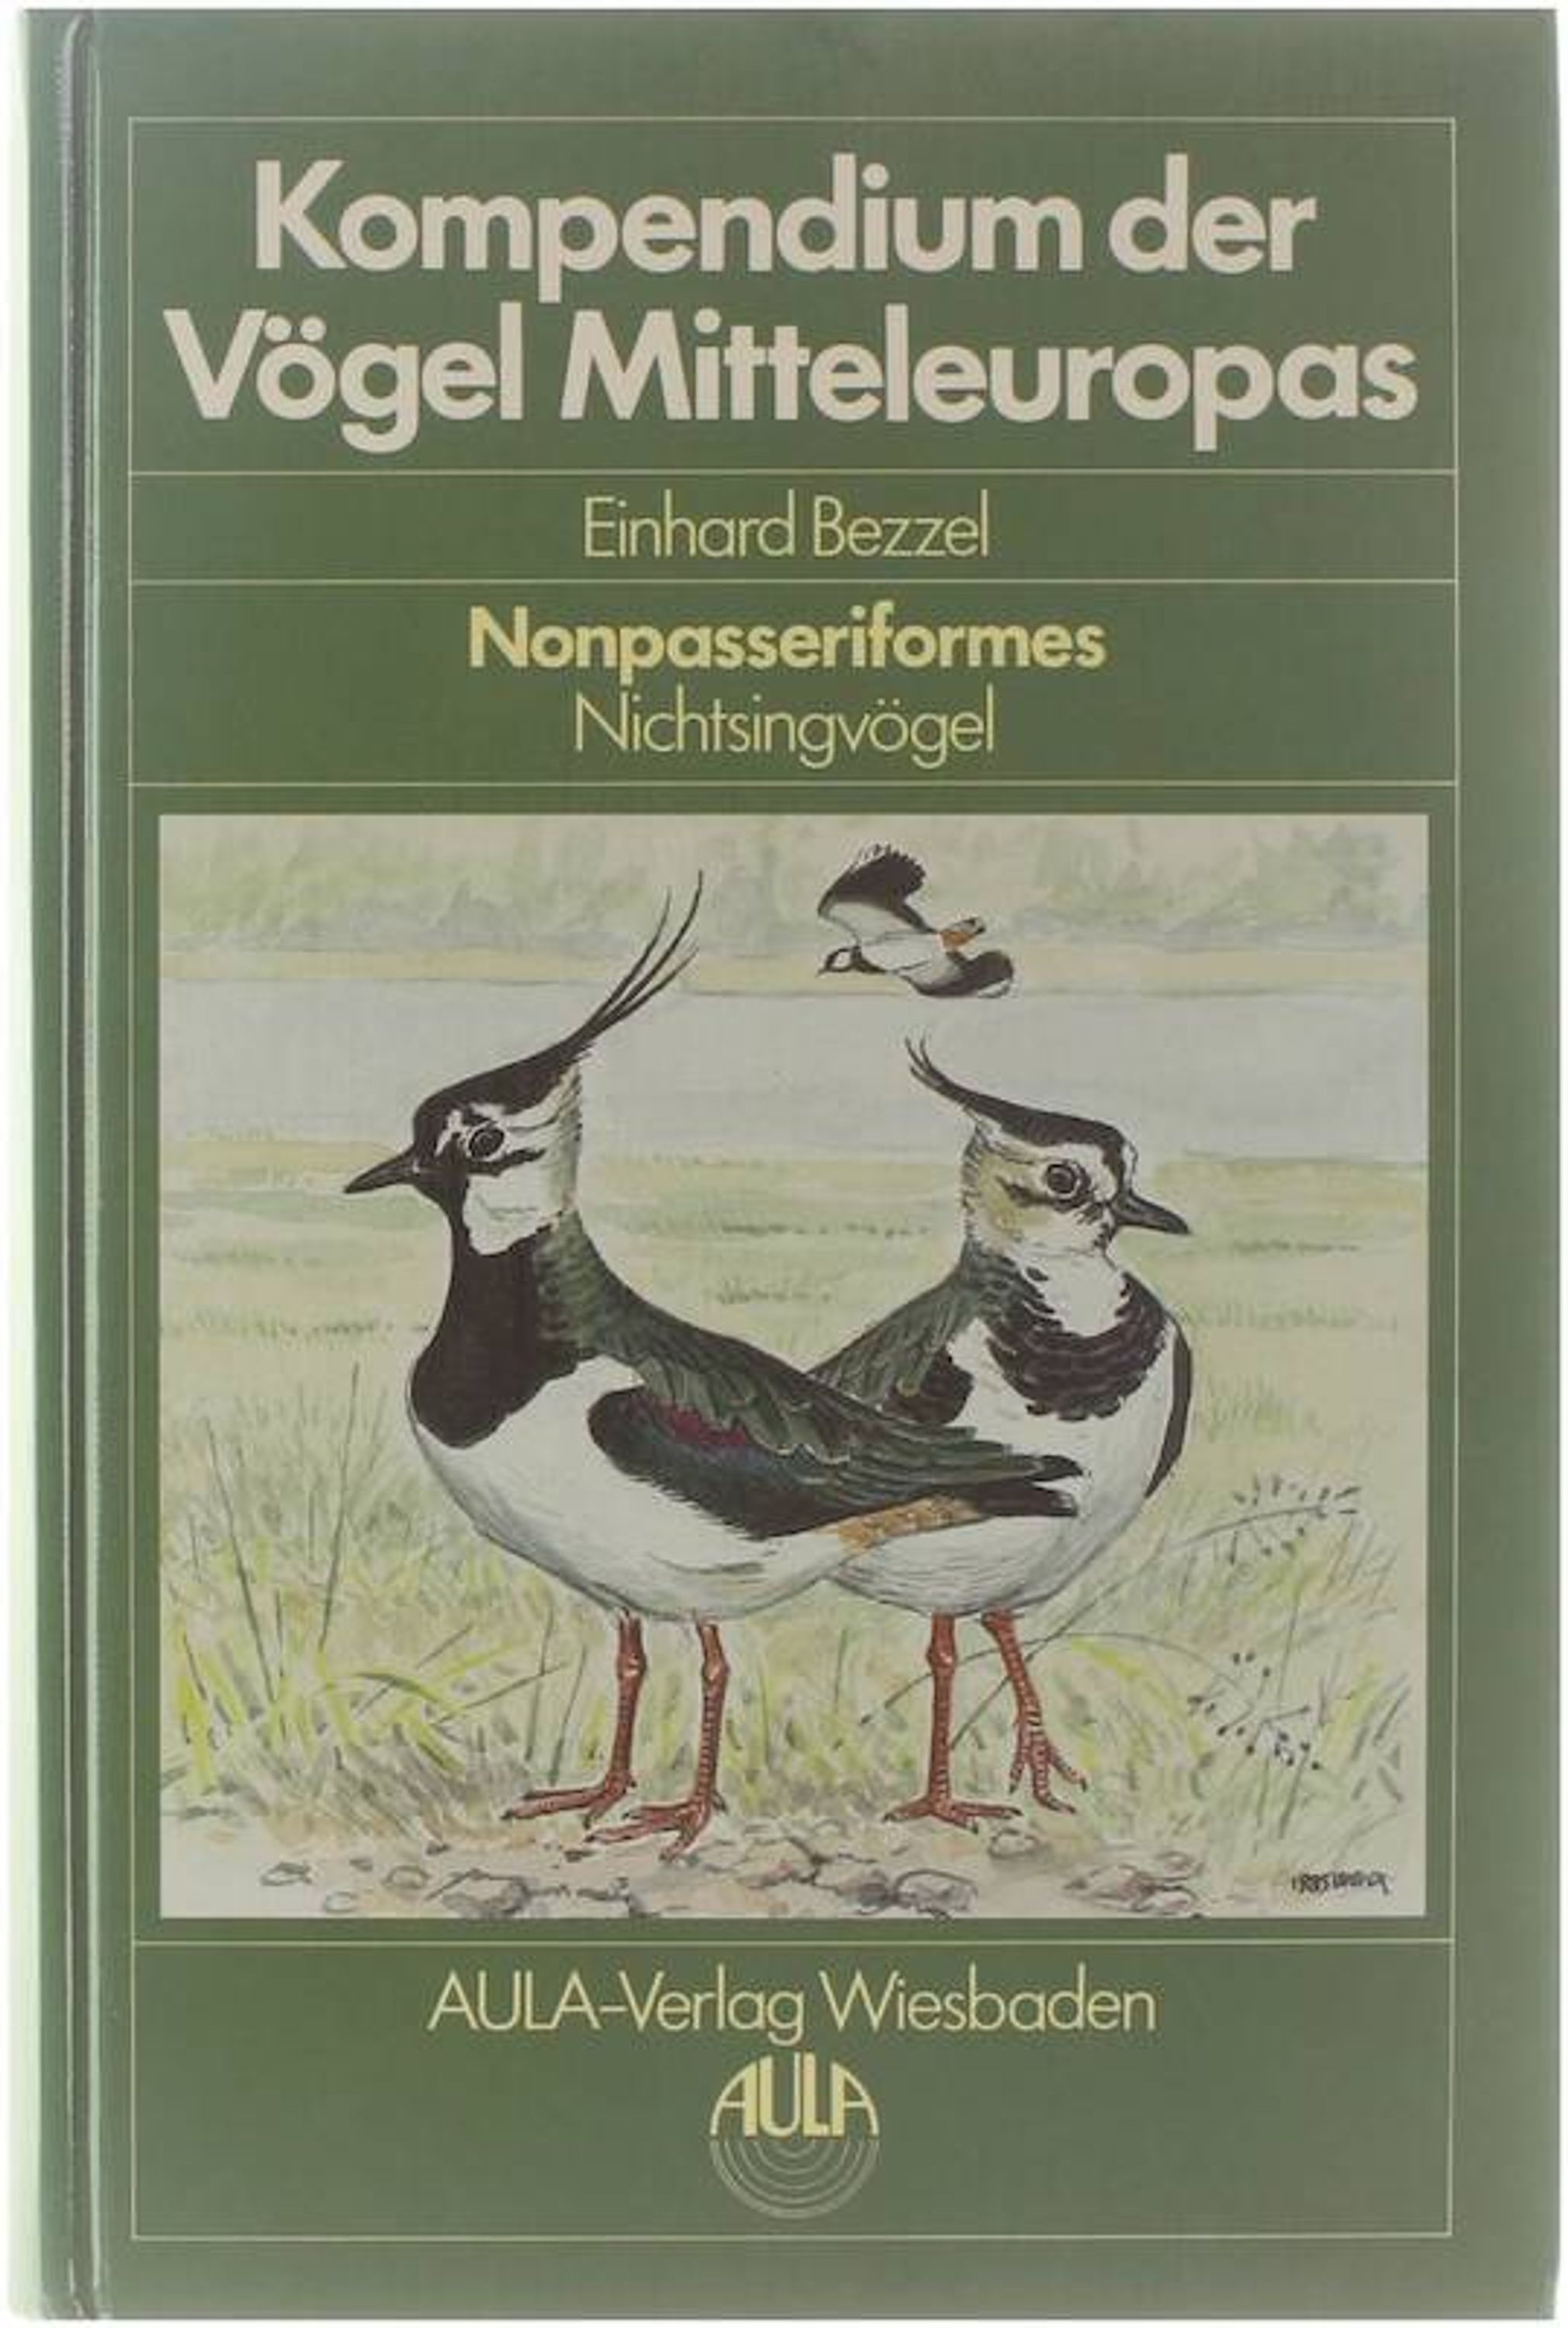 Kompendium der Vögel Mitteleuropas - Nonpasseriformes Nichtsingvögel. - Einhard Bezzel